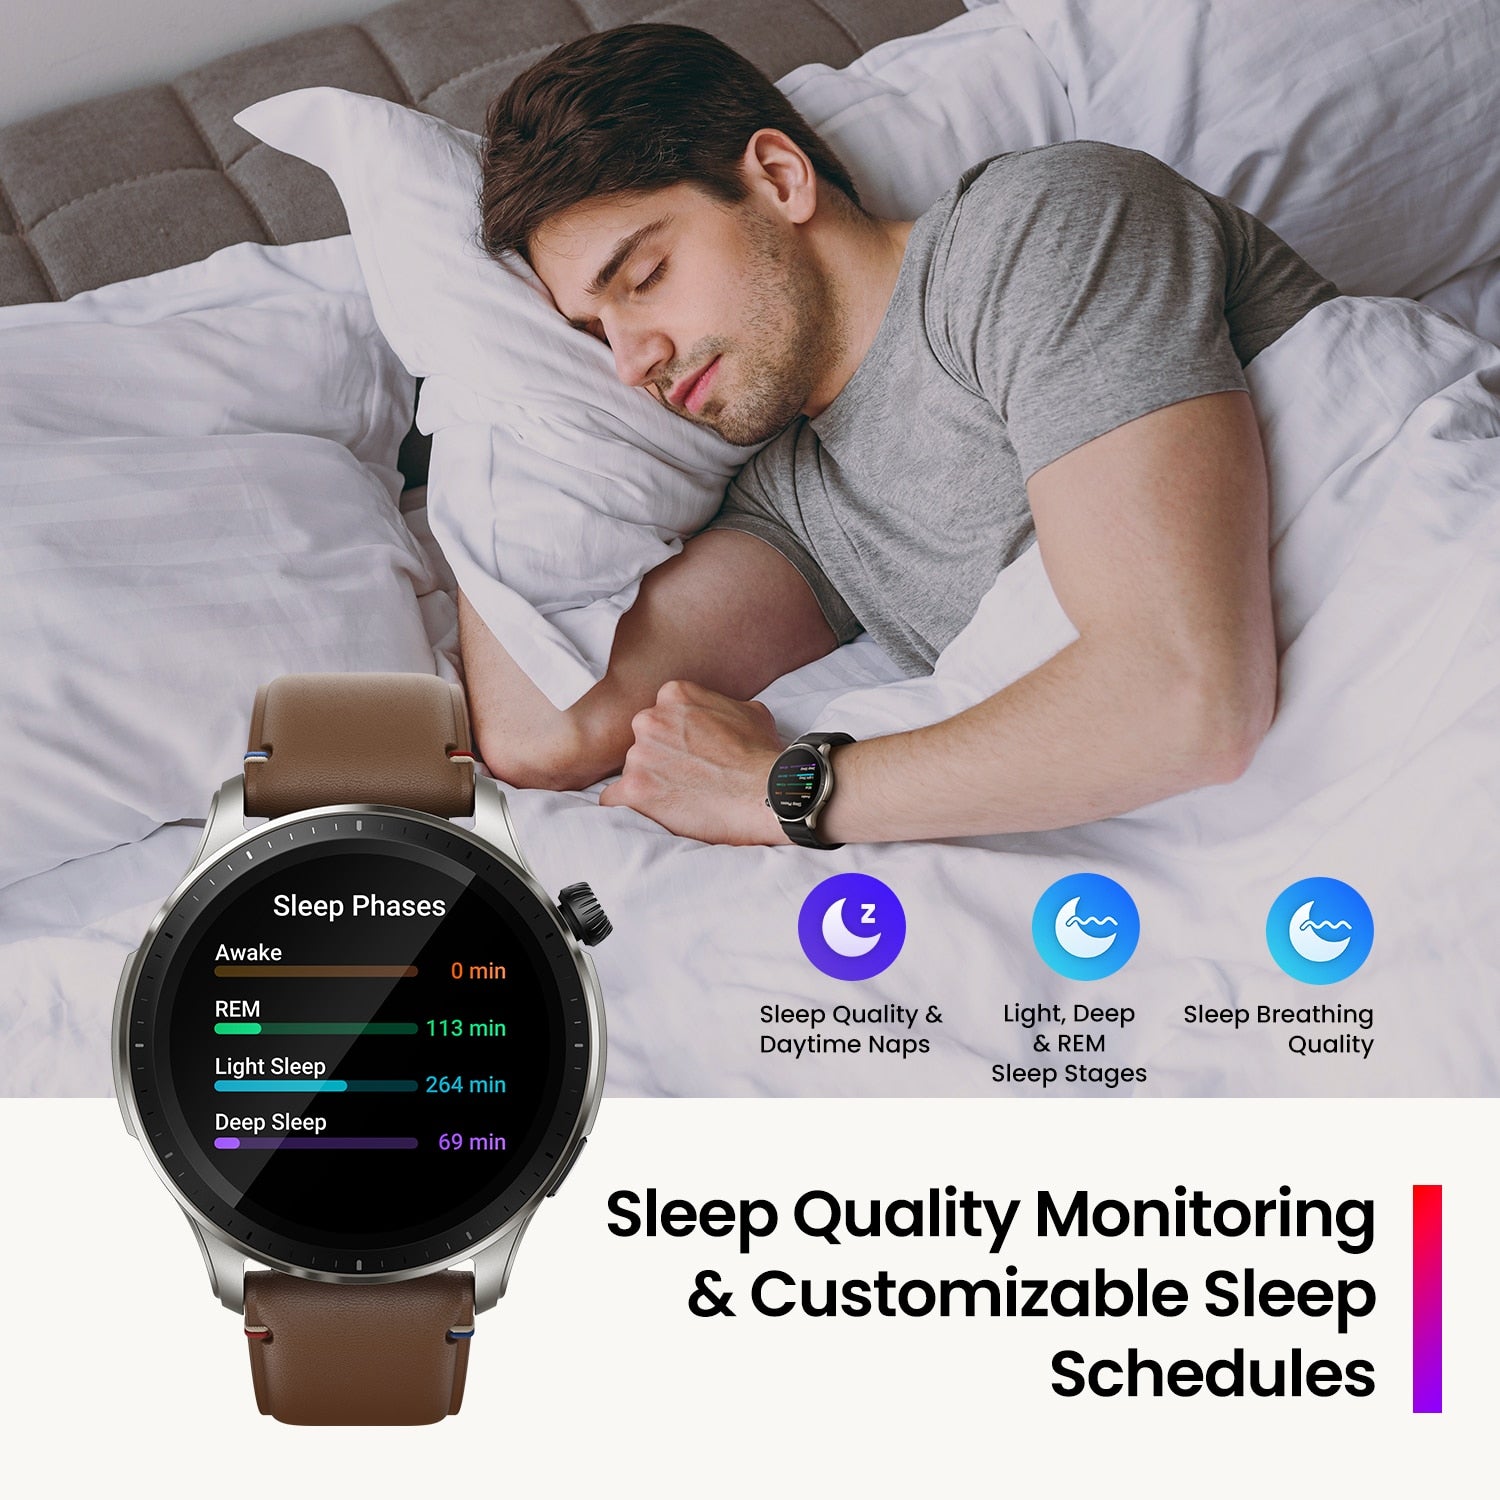 NEW Amazfit GTR 4 Smartwatch Alexa Built 150 Sports Modes Bluetooth Phone Calls Smart Watch 14Days Battery Life smart watch DailyAlertDeals   